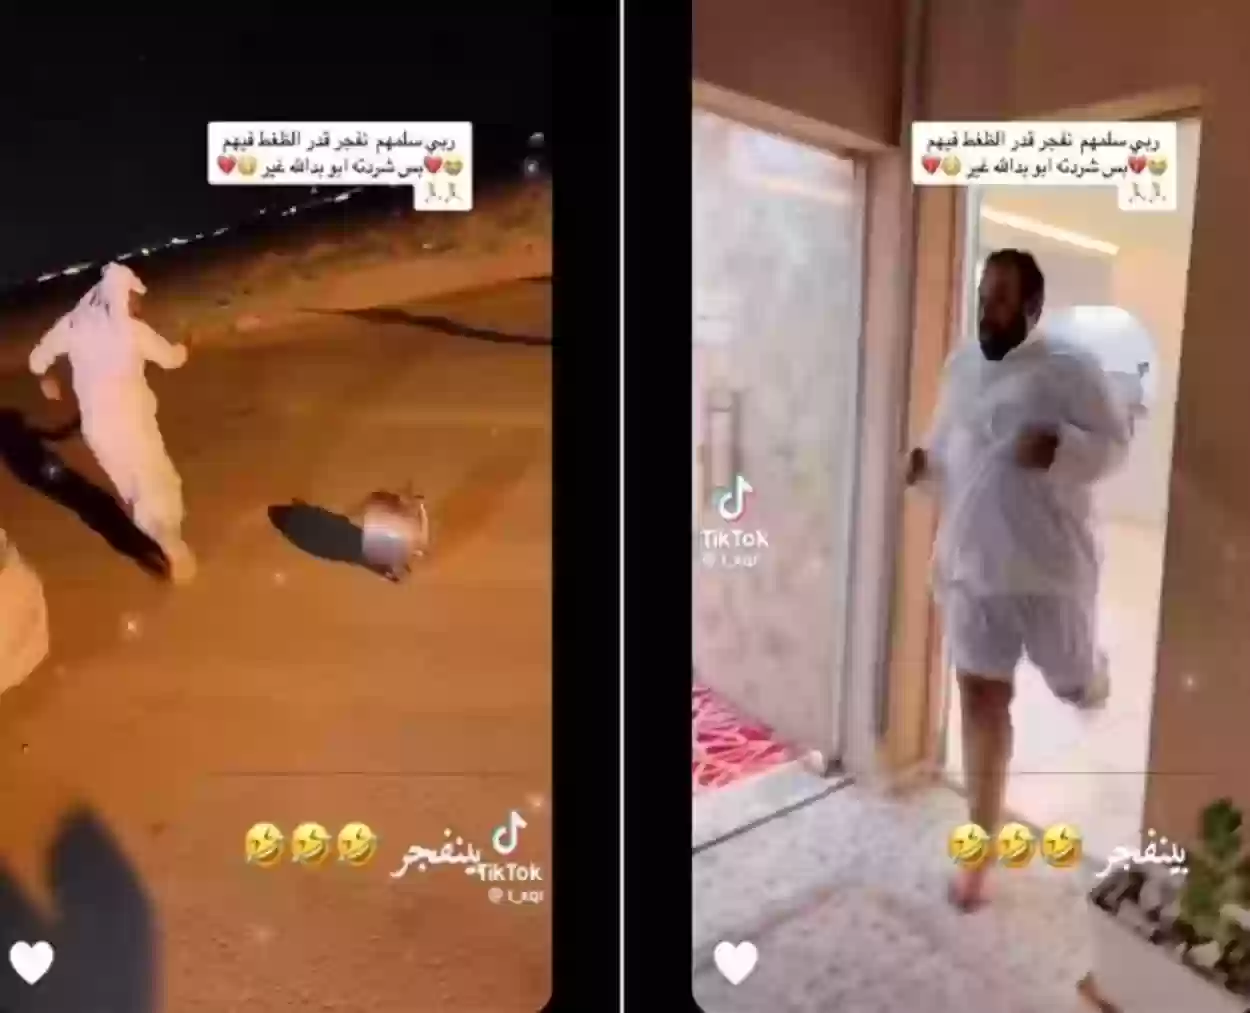  تجربة شُبان سعوديون من الهلع إلى الضحك الهستيري